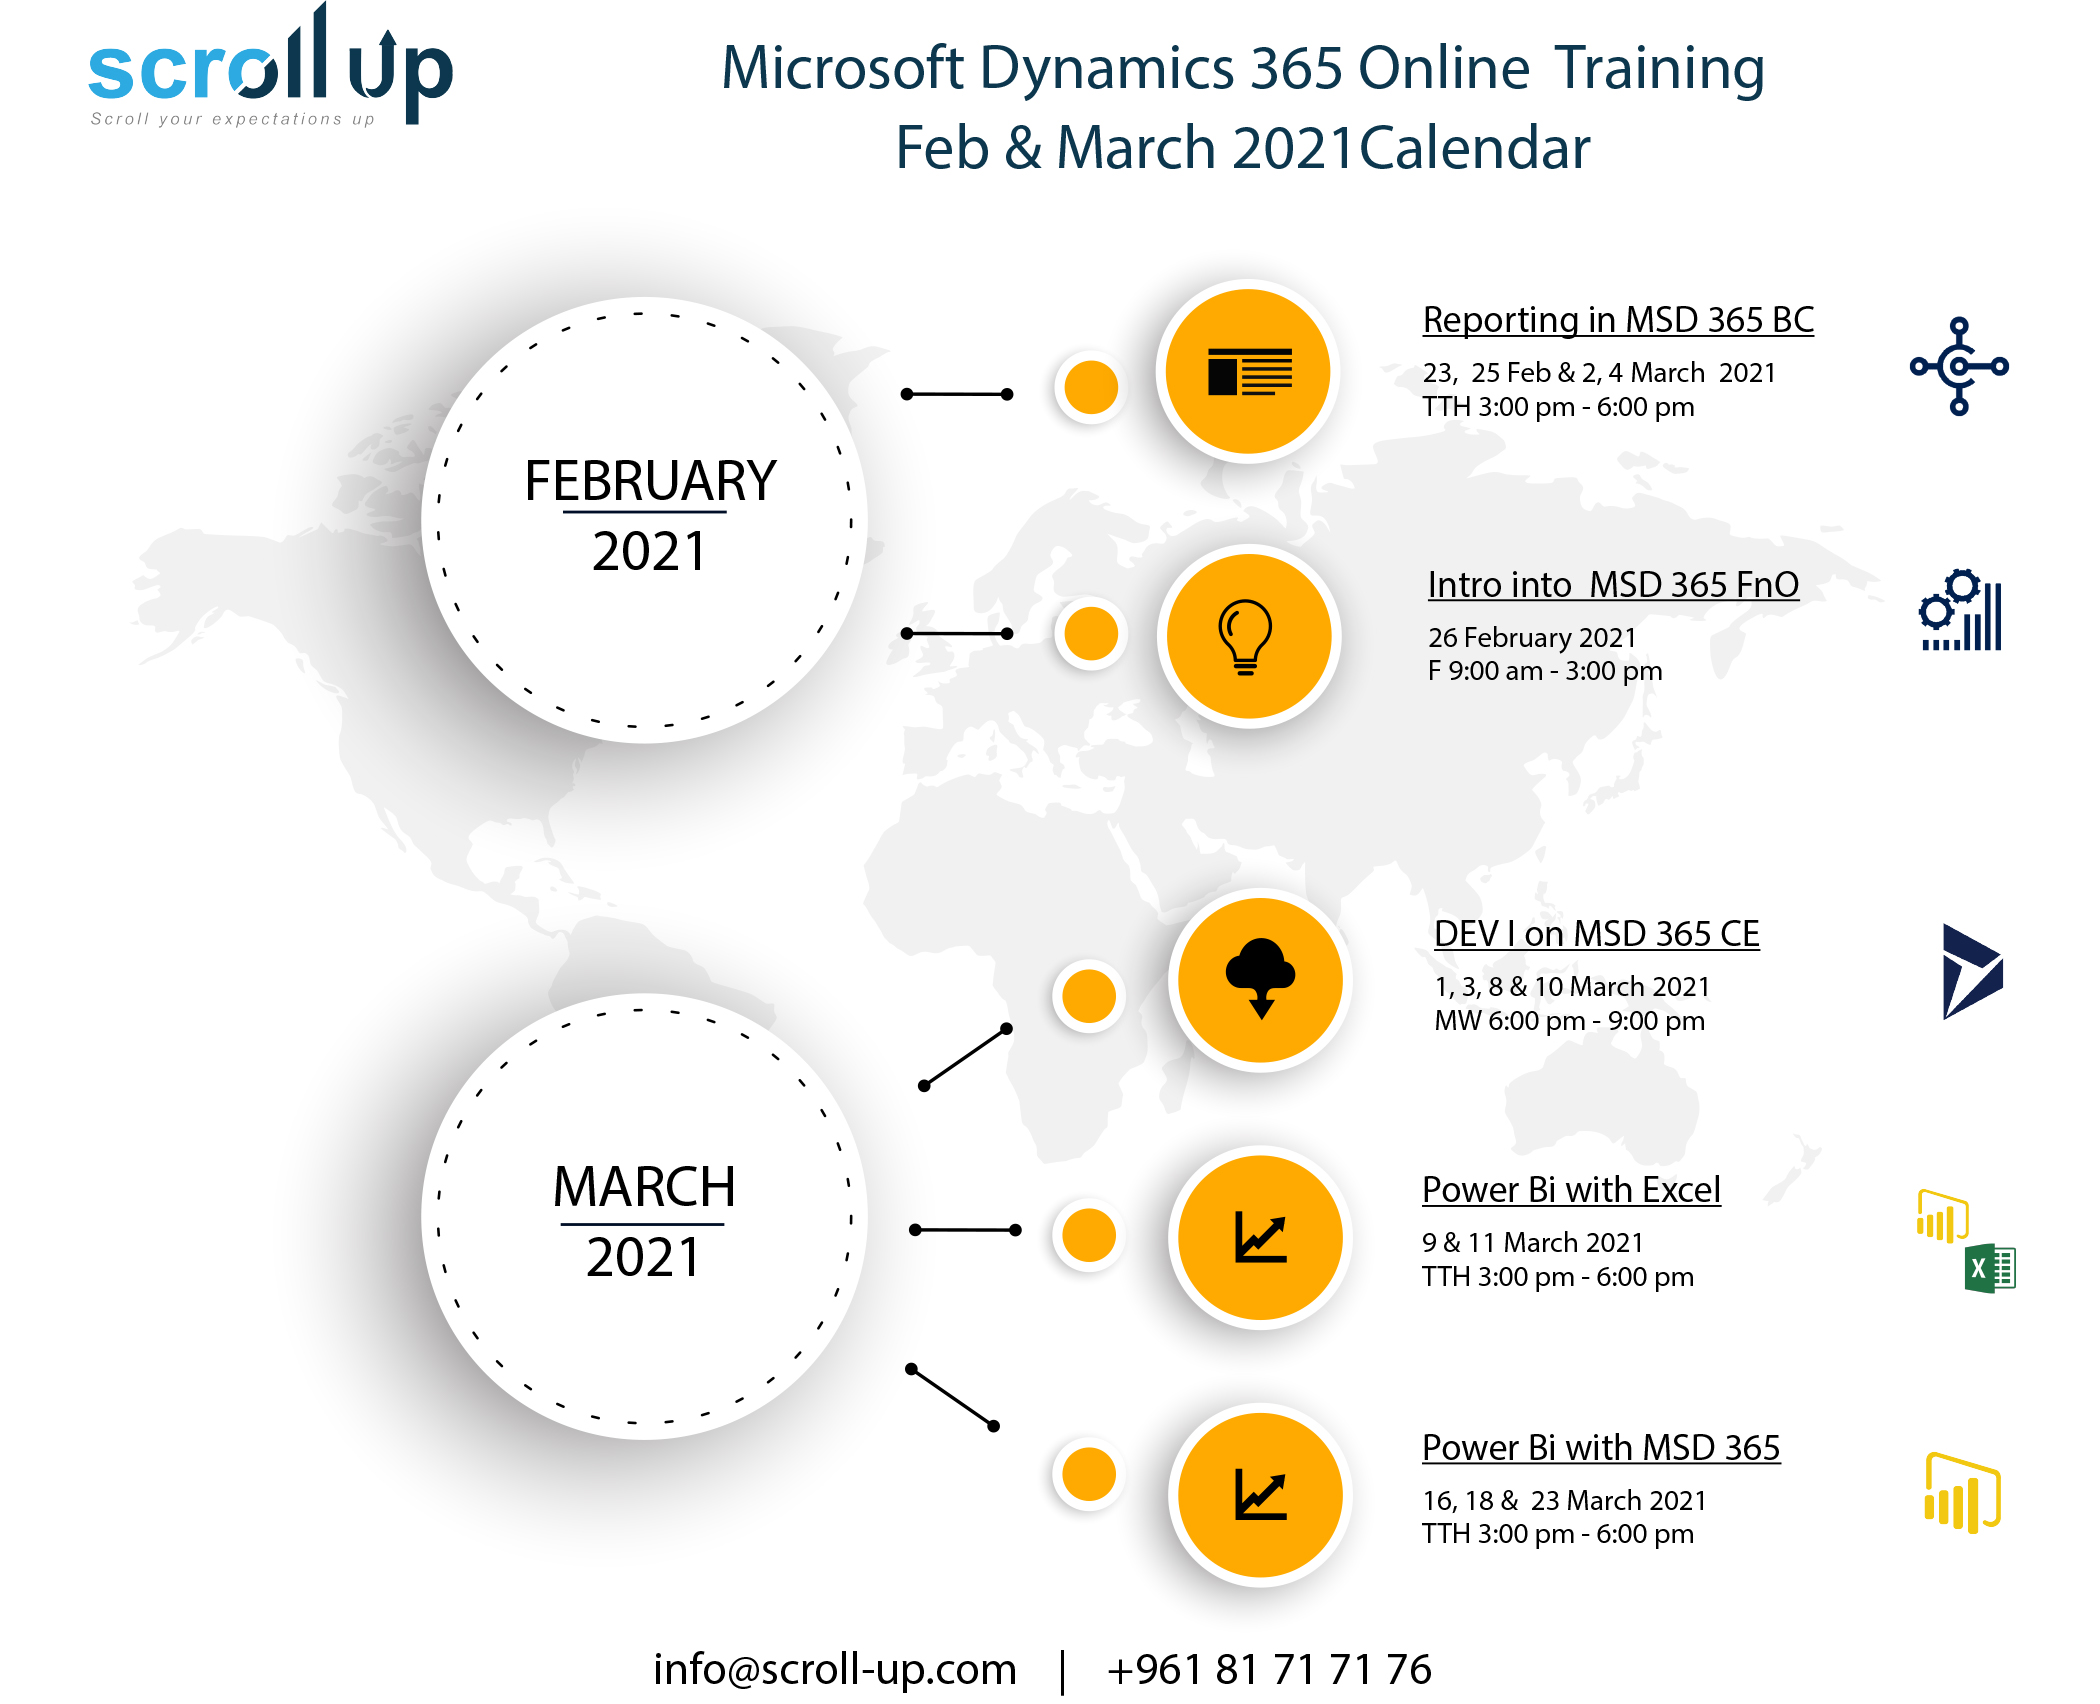 Microsoft Dynamics 365 Online Training Feb & March 2021 Calendar